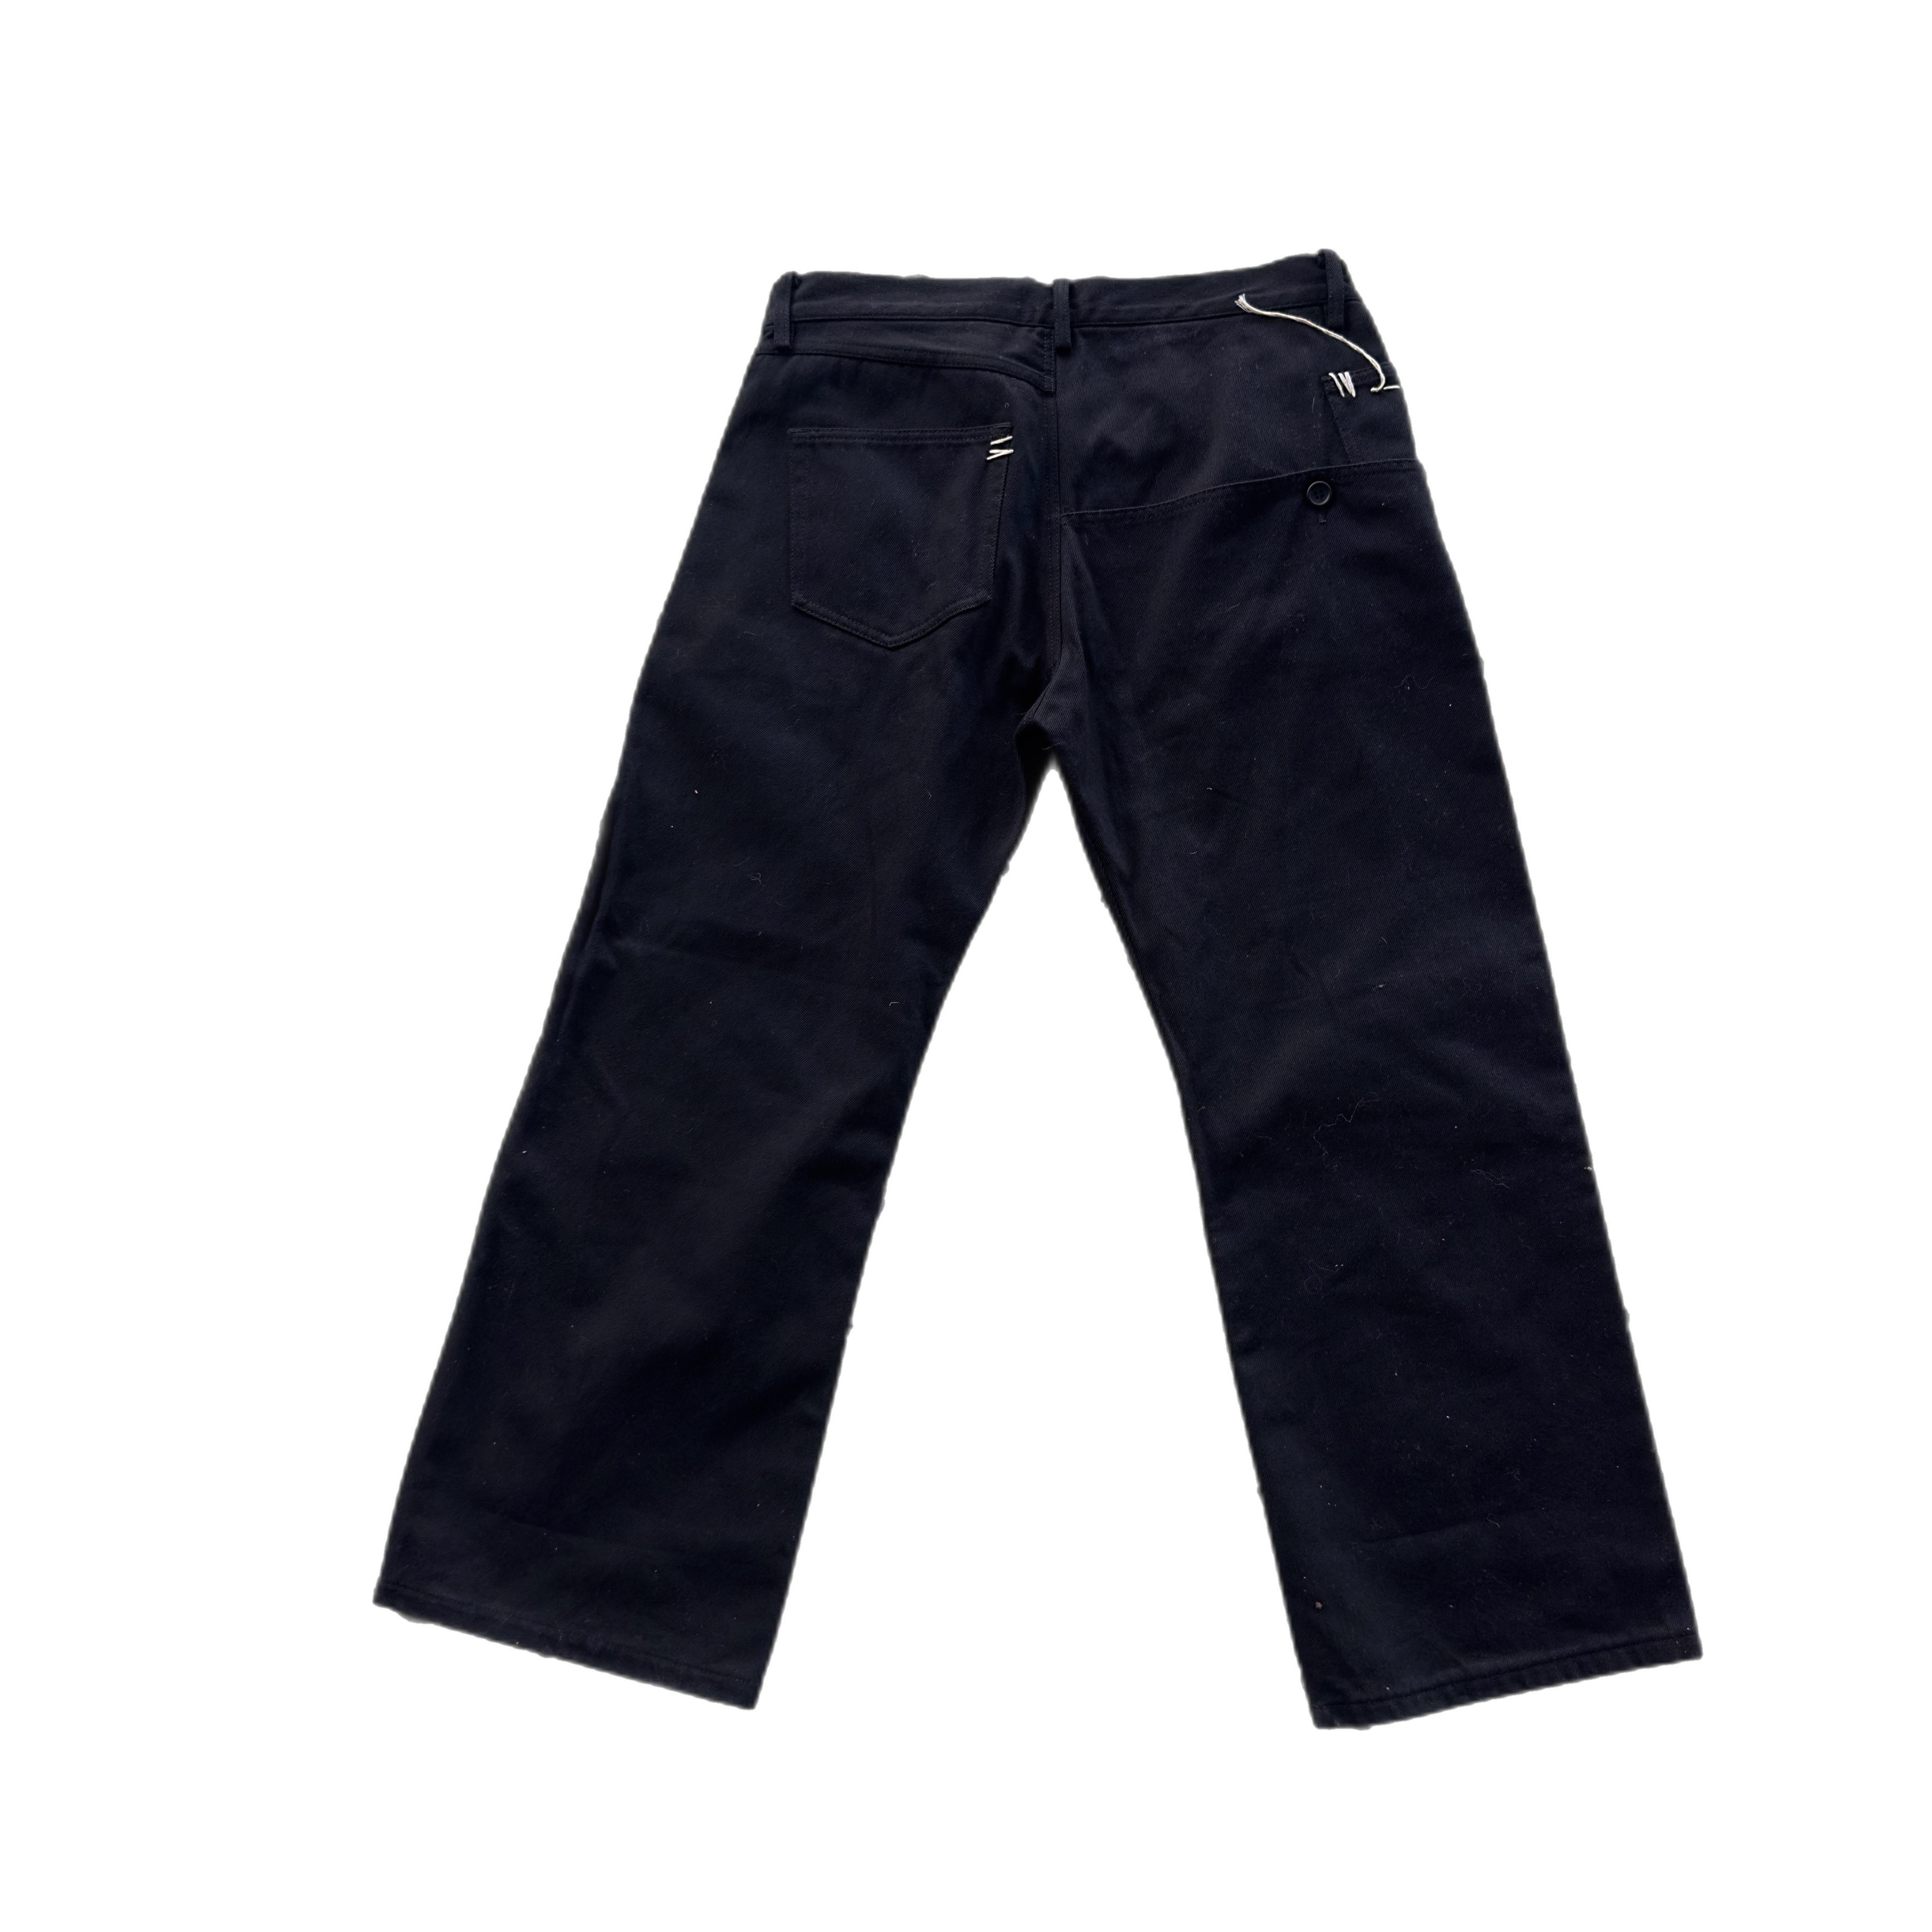 Jeans a gamba larga Y's Yohji Yamamoto in denim nero anni'90
Tasconi sul retro con dettagli impunture bianchi
Misure:
Vita 44cm
Fianchi 55cm
Gamba 31cm
Lunghezza 100cm